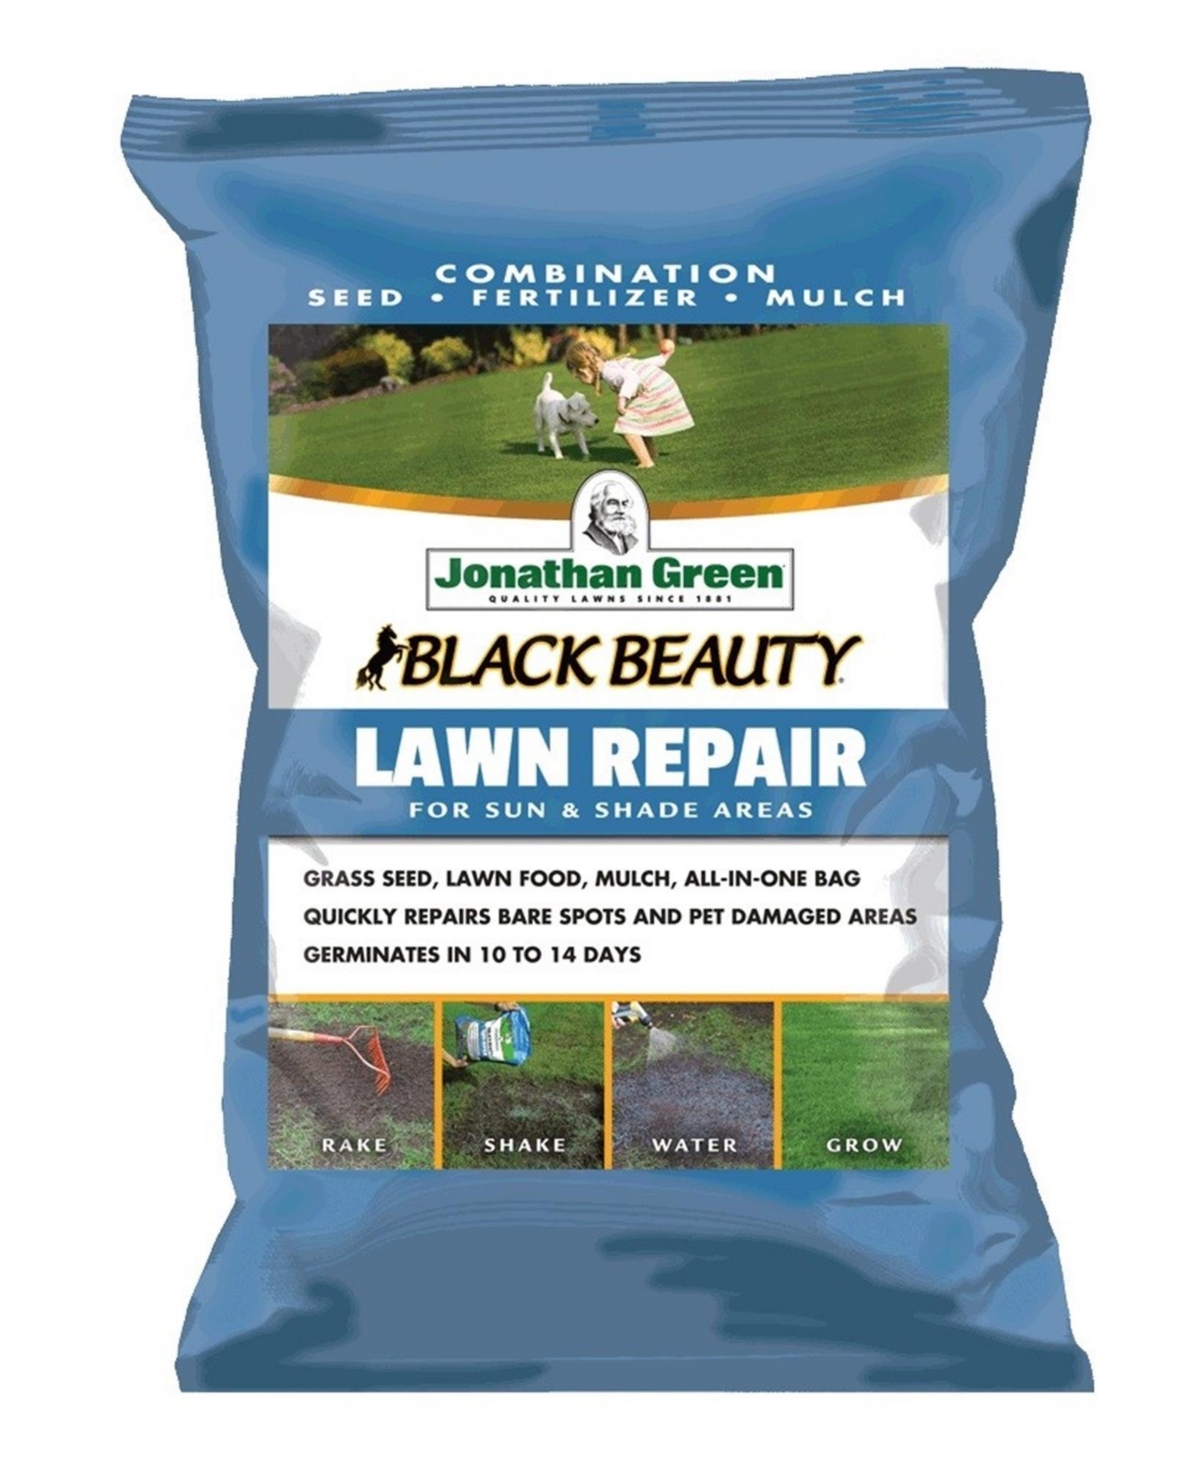 Black Beauty Lawn Repair for Sun & Shade, 4.5lb bag - Brown